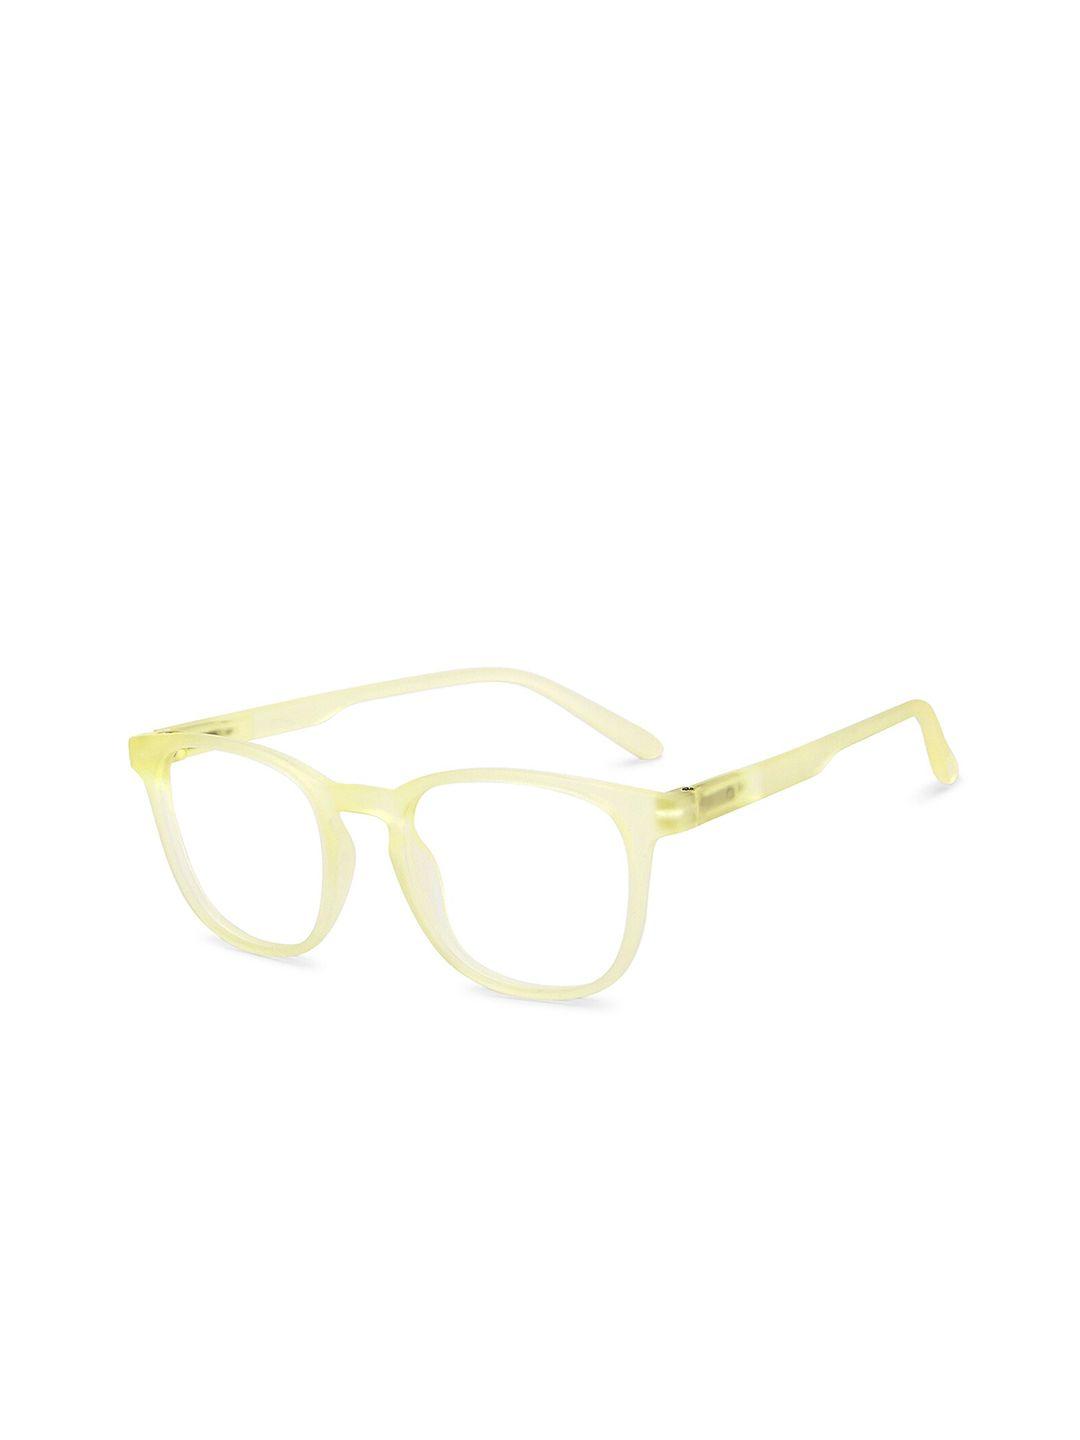 lenskart blu unisex hustlr eye protection full rim glasses square frames 207491